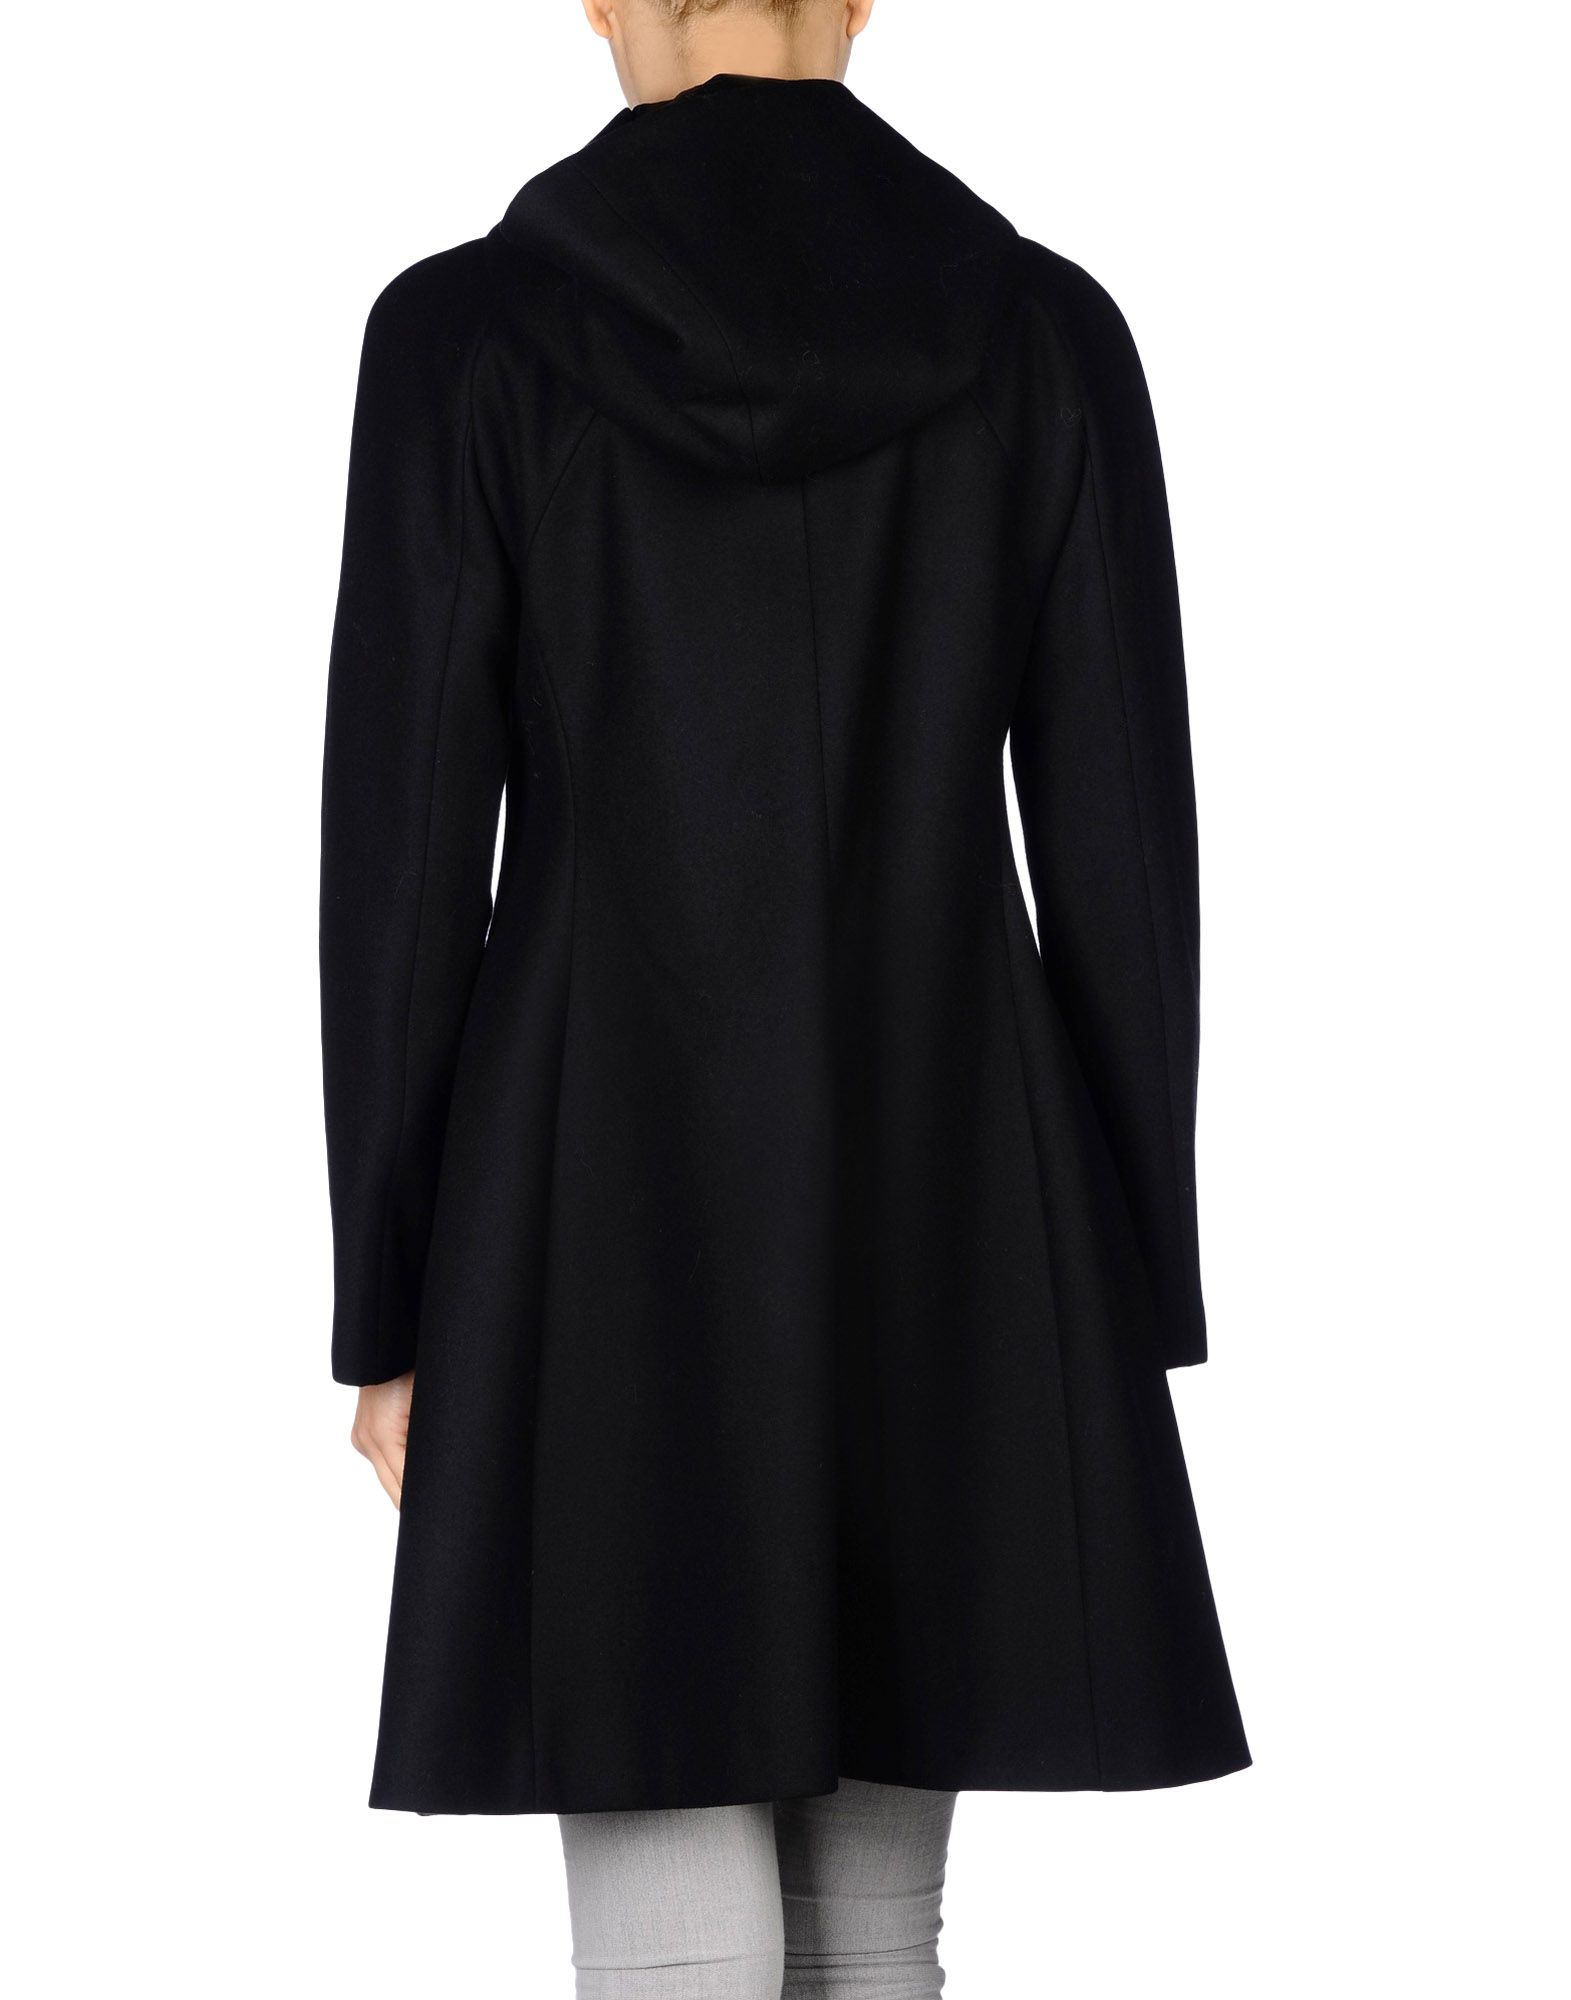 Lyst - Giorgio Armani Coat in Black